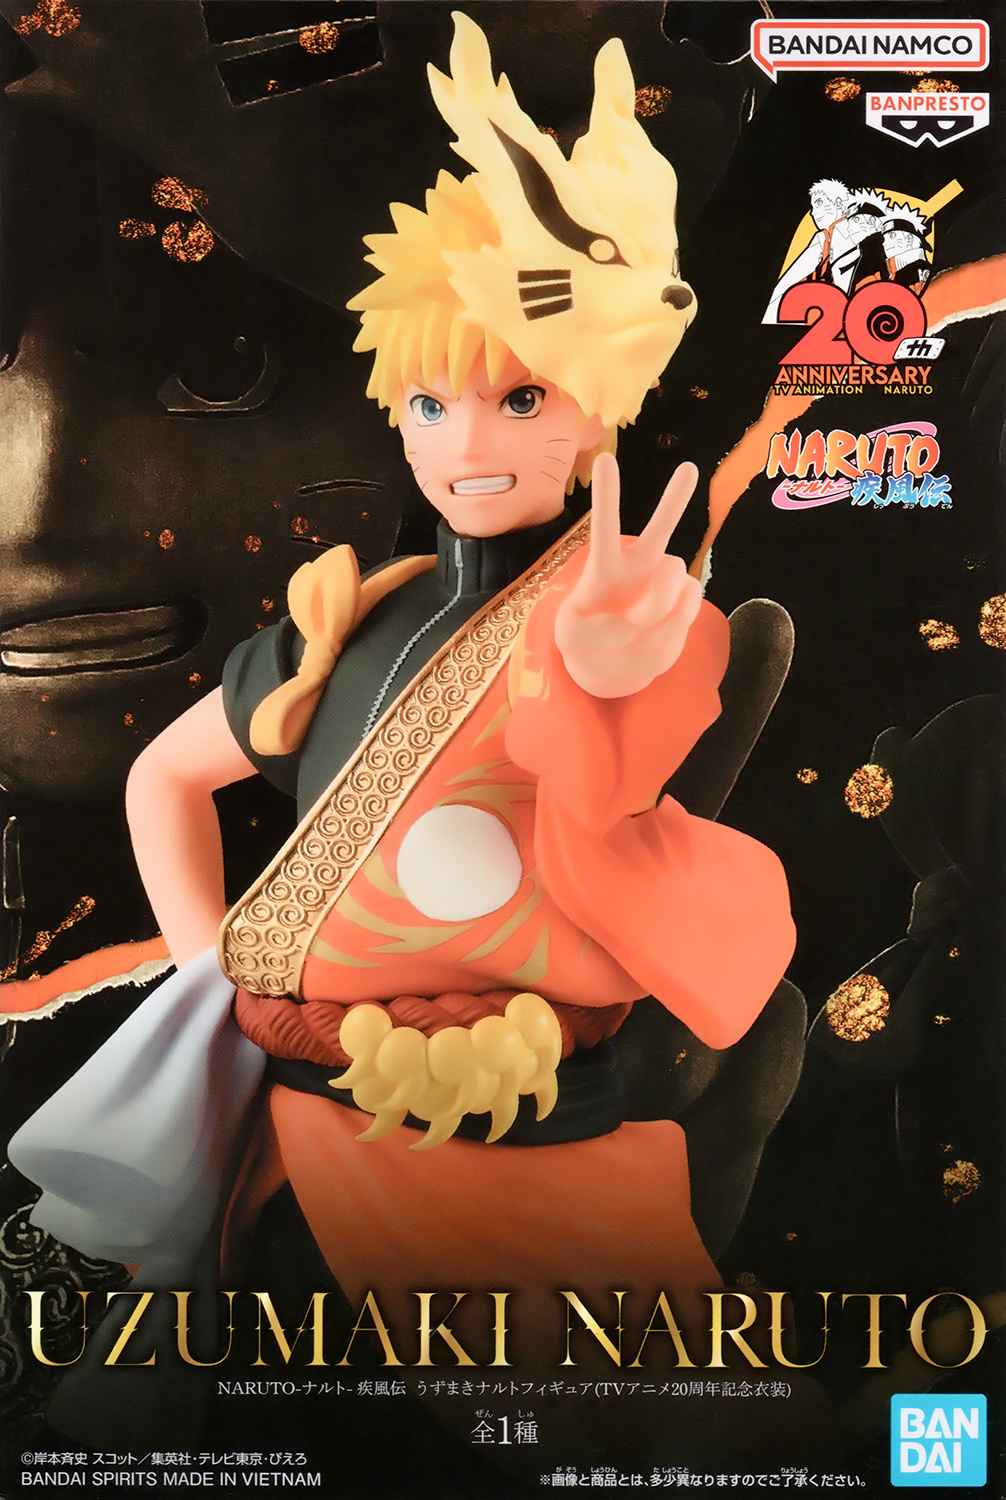 Naruto Uzumaki  Naruto uzumaki, Anime, Naruto shippuden anime